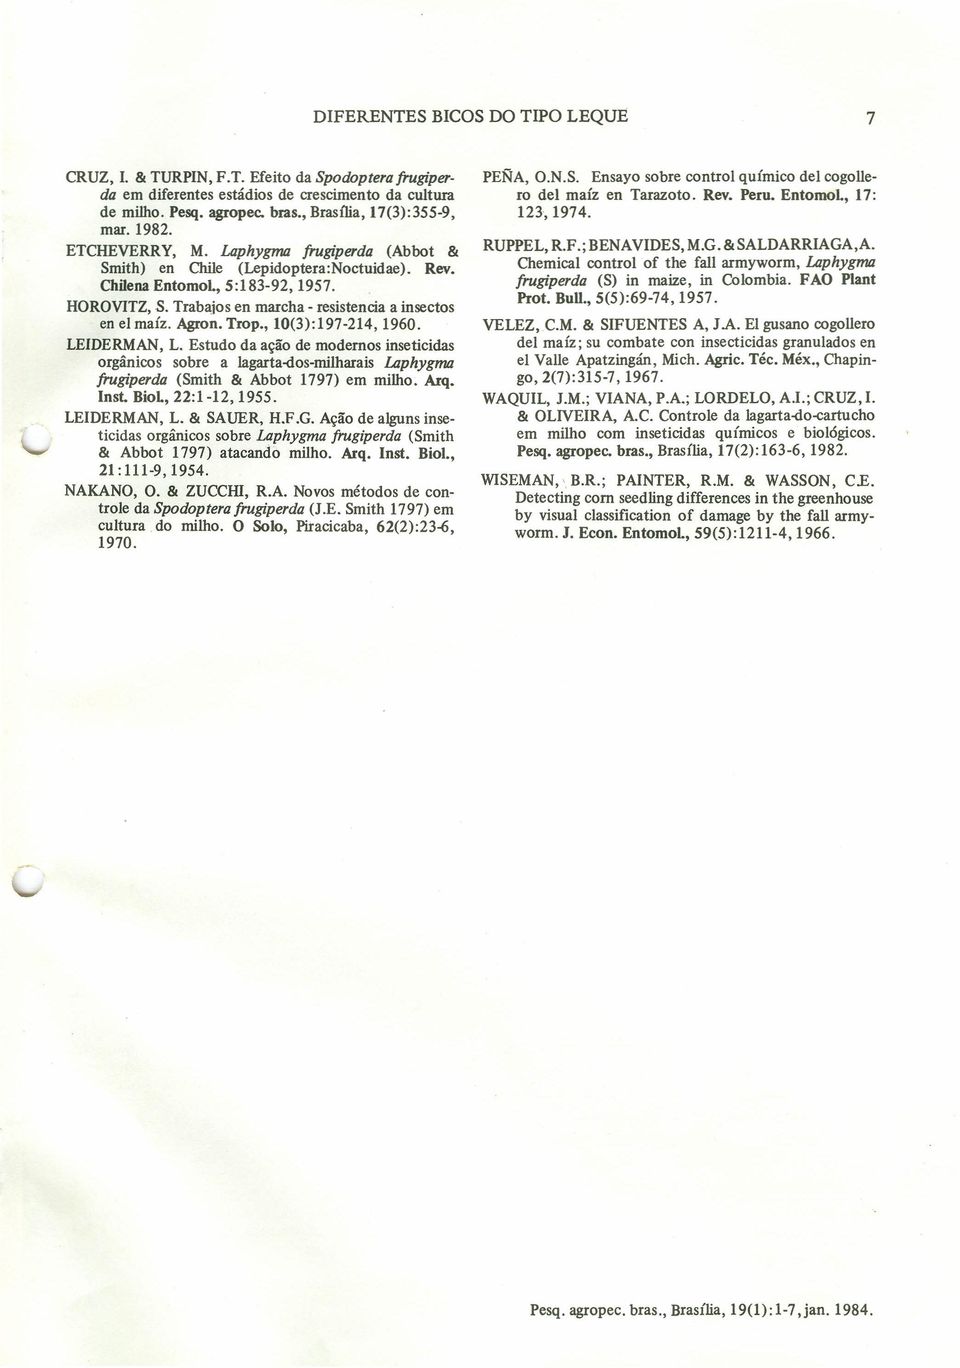 Agron. Trop., 10():197-214, 1960. LEIDERMAN, L. Estudo da ação de modernos inseticidas orgânicos sobre a lagarta-dos-milharais Laphygma frugiperda (Smith & Abbot 1797) em milho. Arq. Inst.